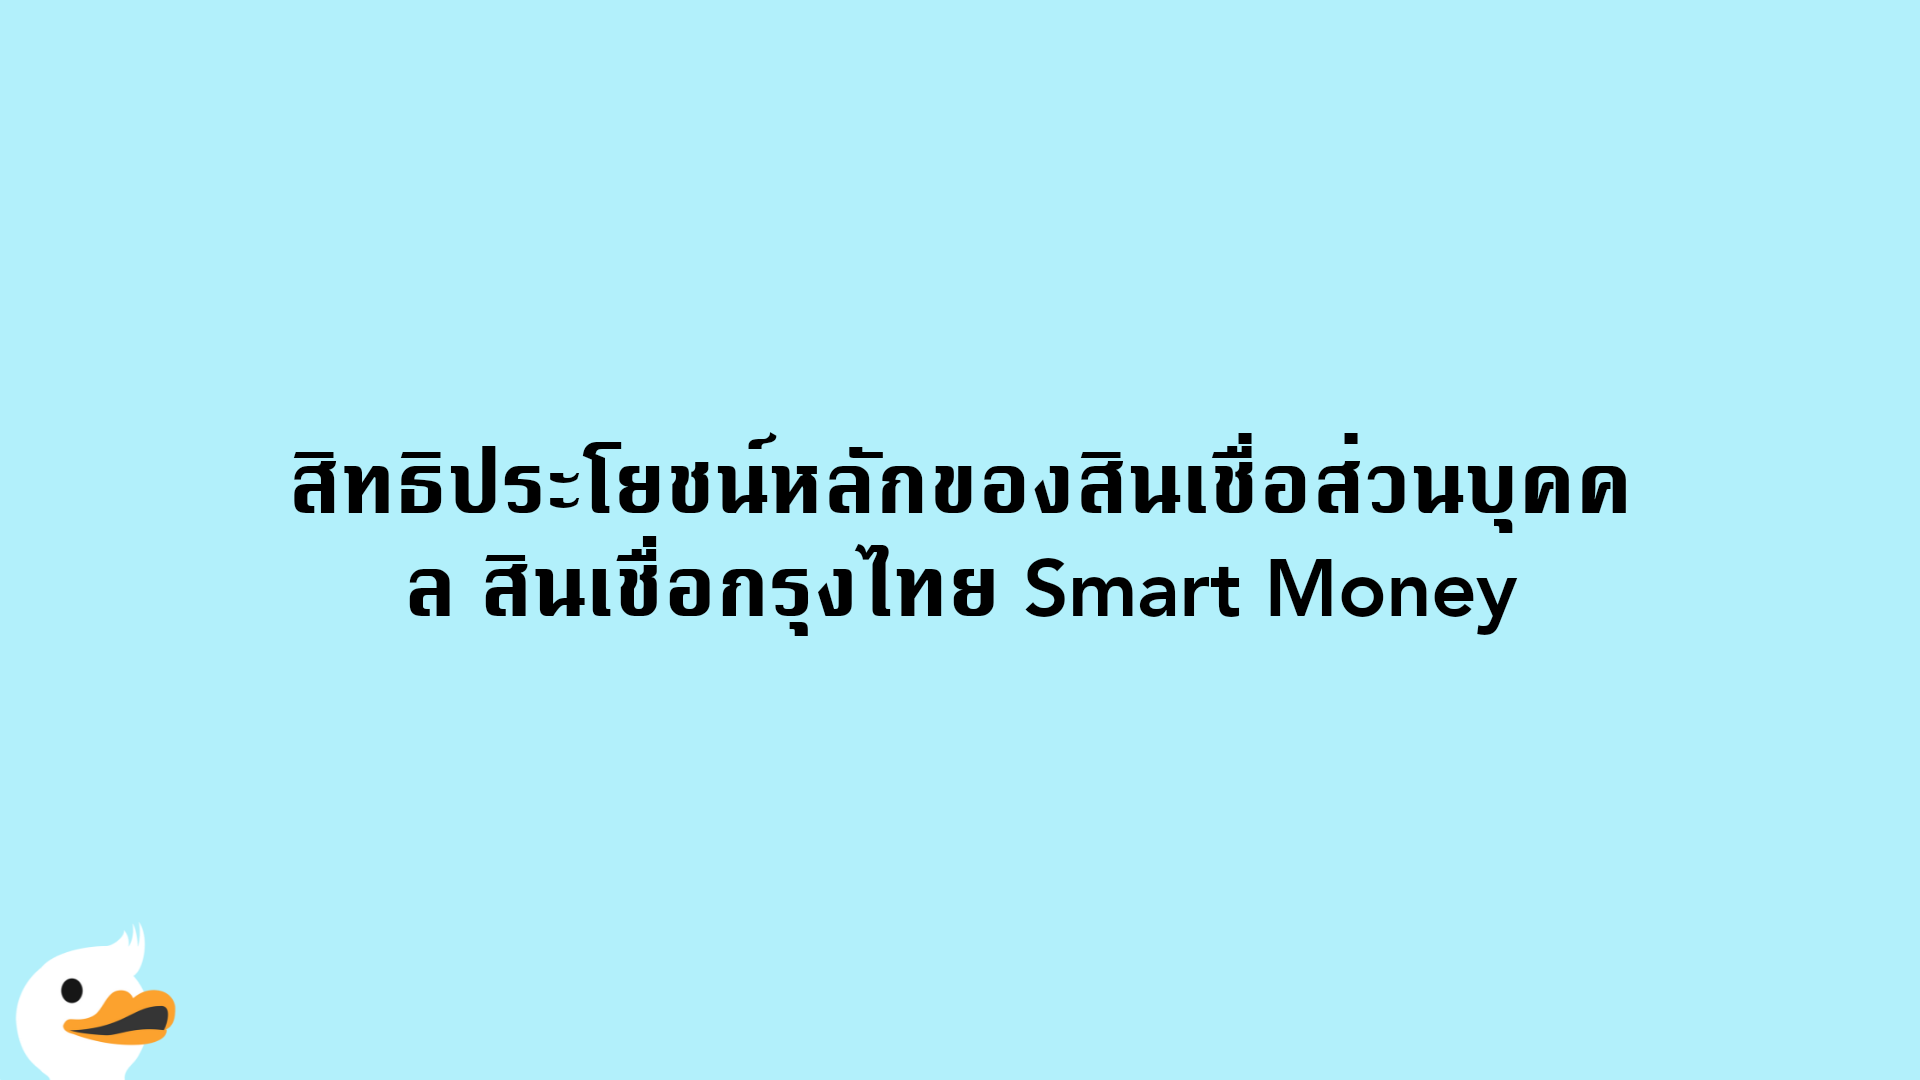 สิทธิประโยชน์หลักของสินเชื่อส่วนบุคคล สินเชื่อกรุงไทย Smart Money